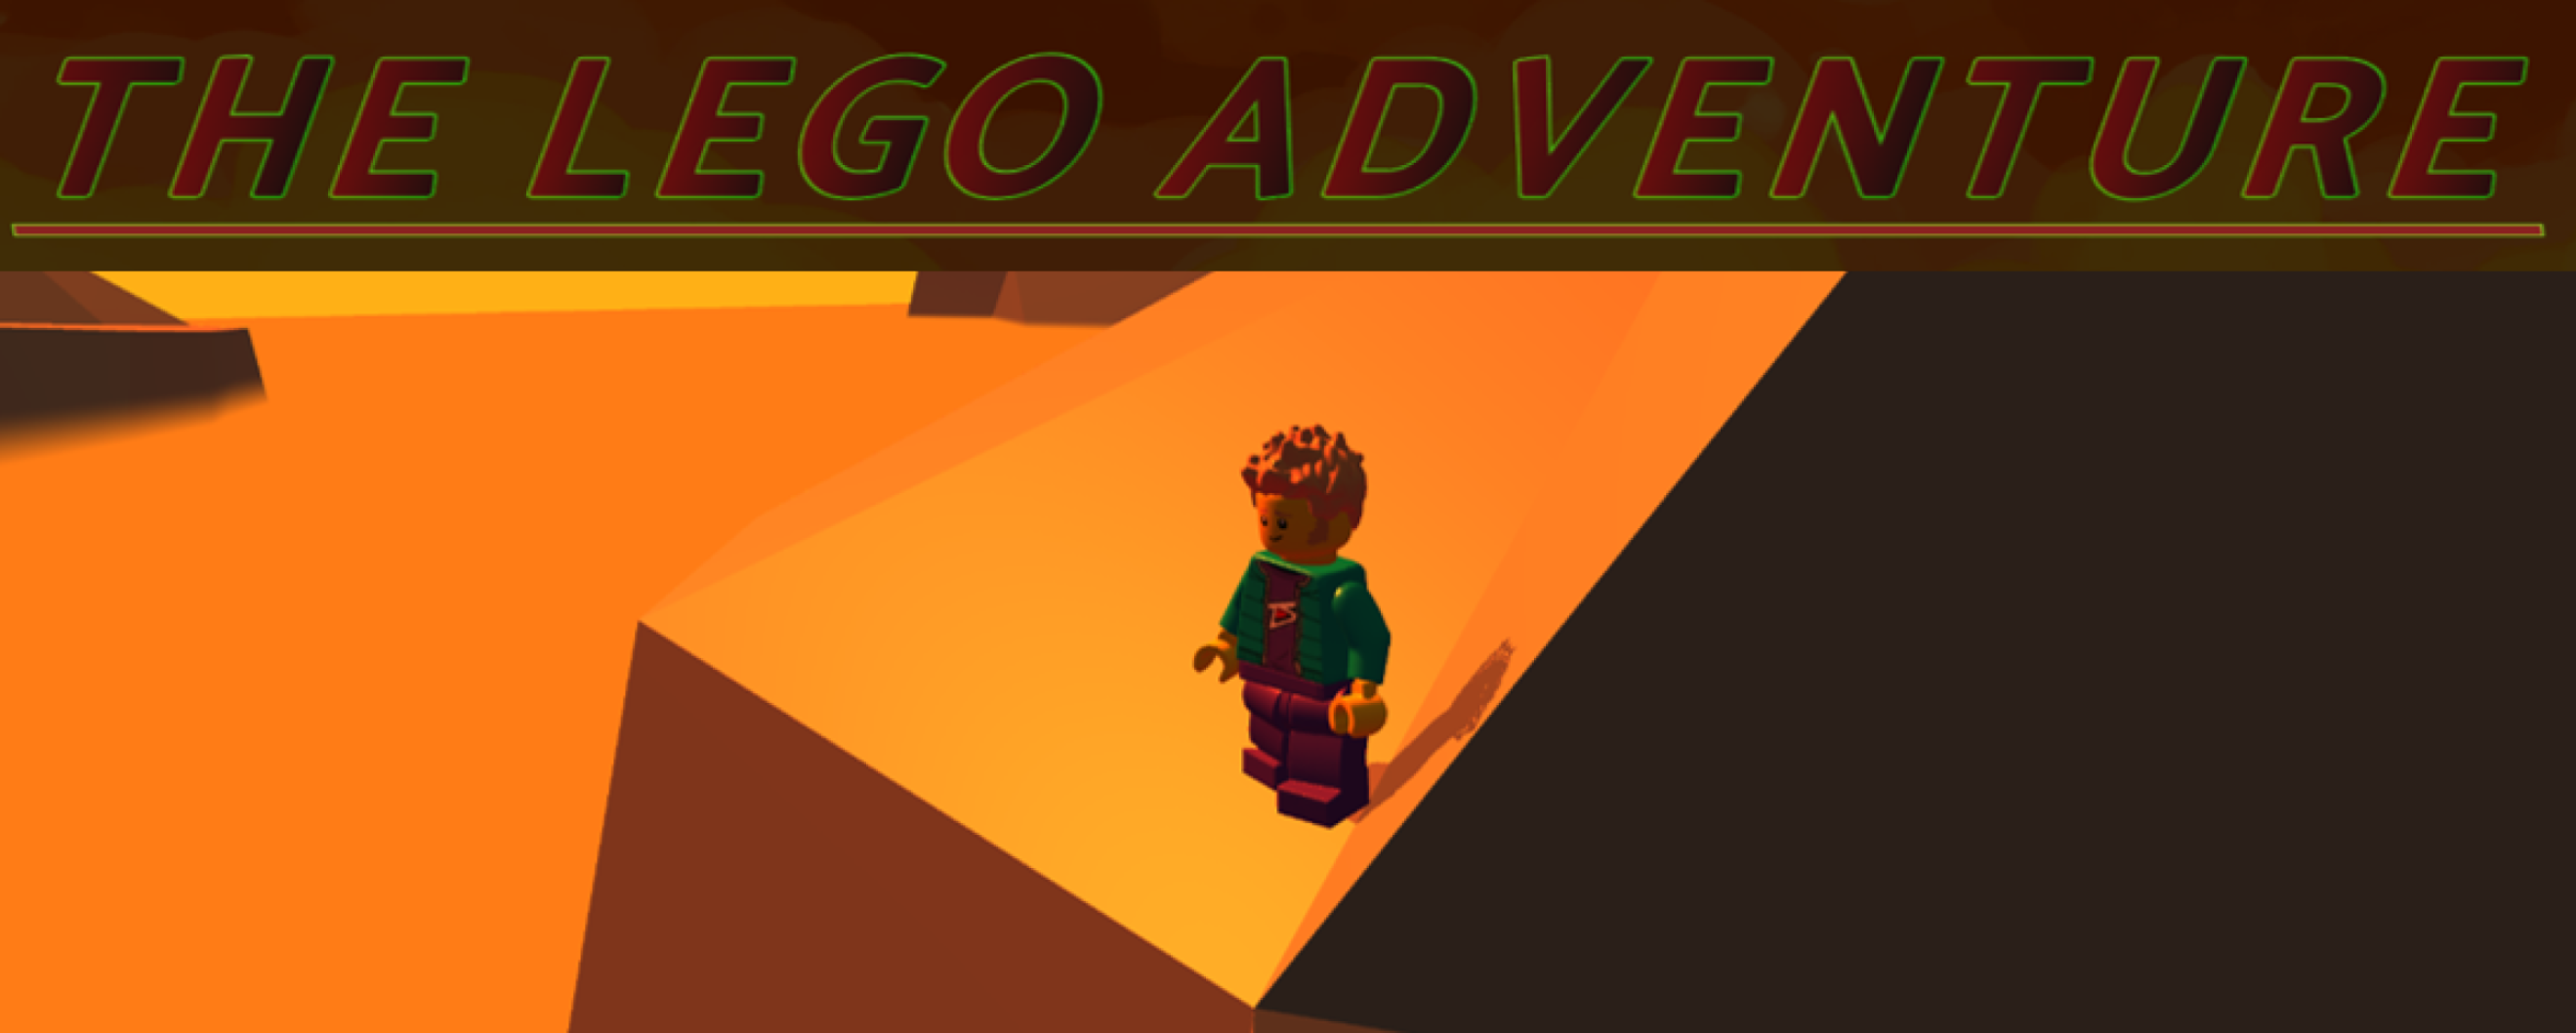 The Lego Adventure